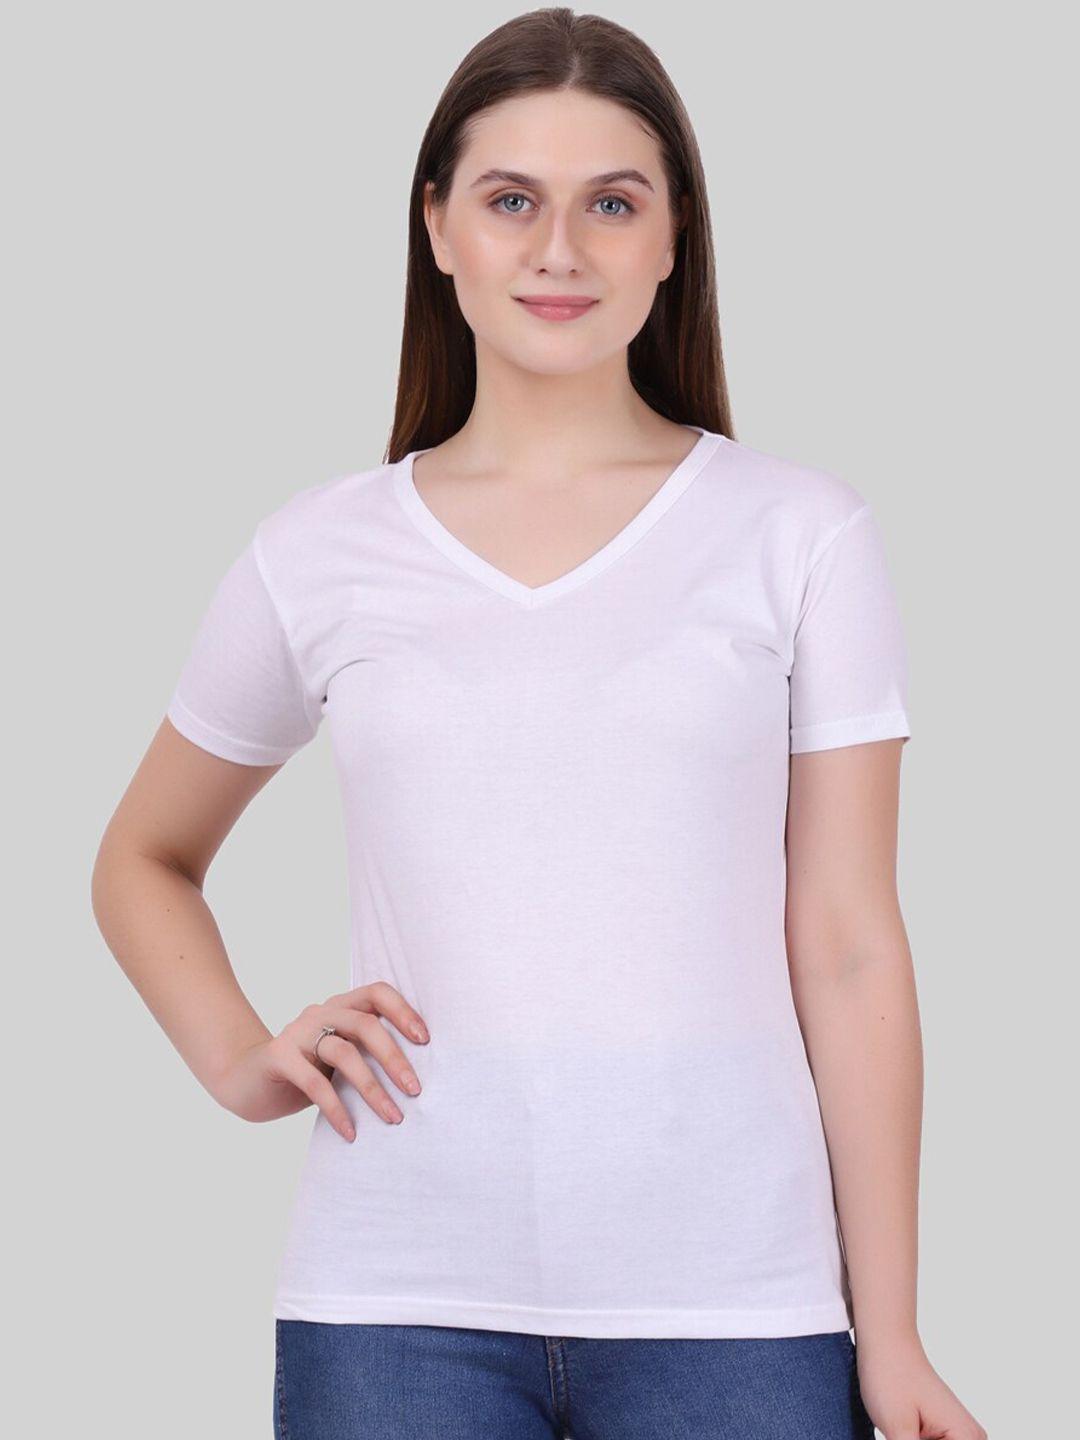 fleximaa women white v-neck t-shirt